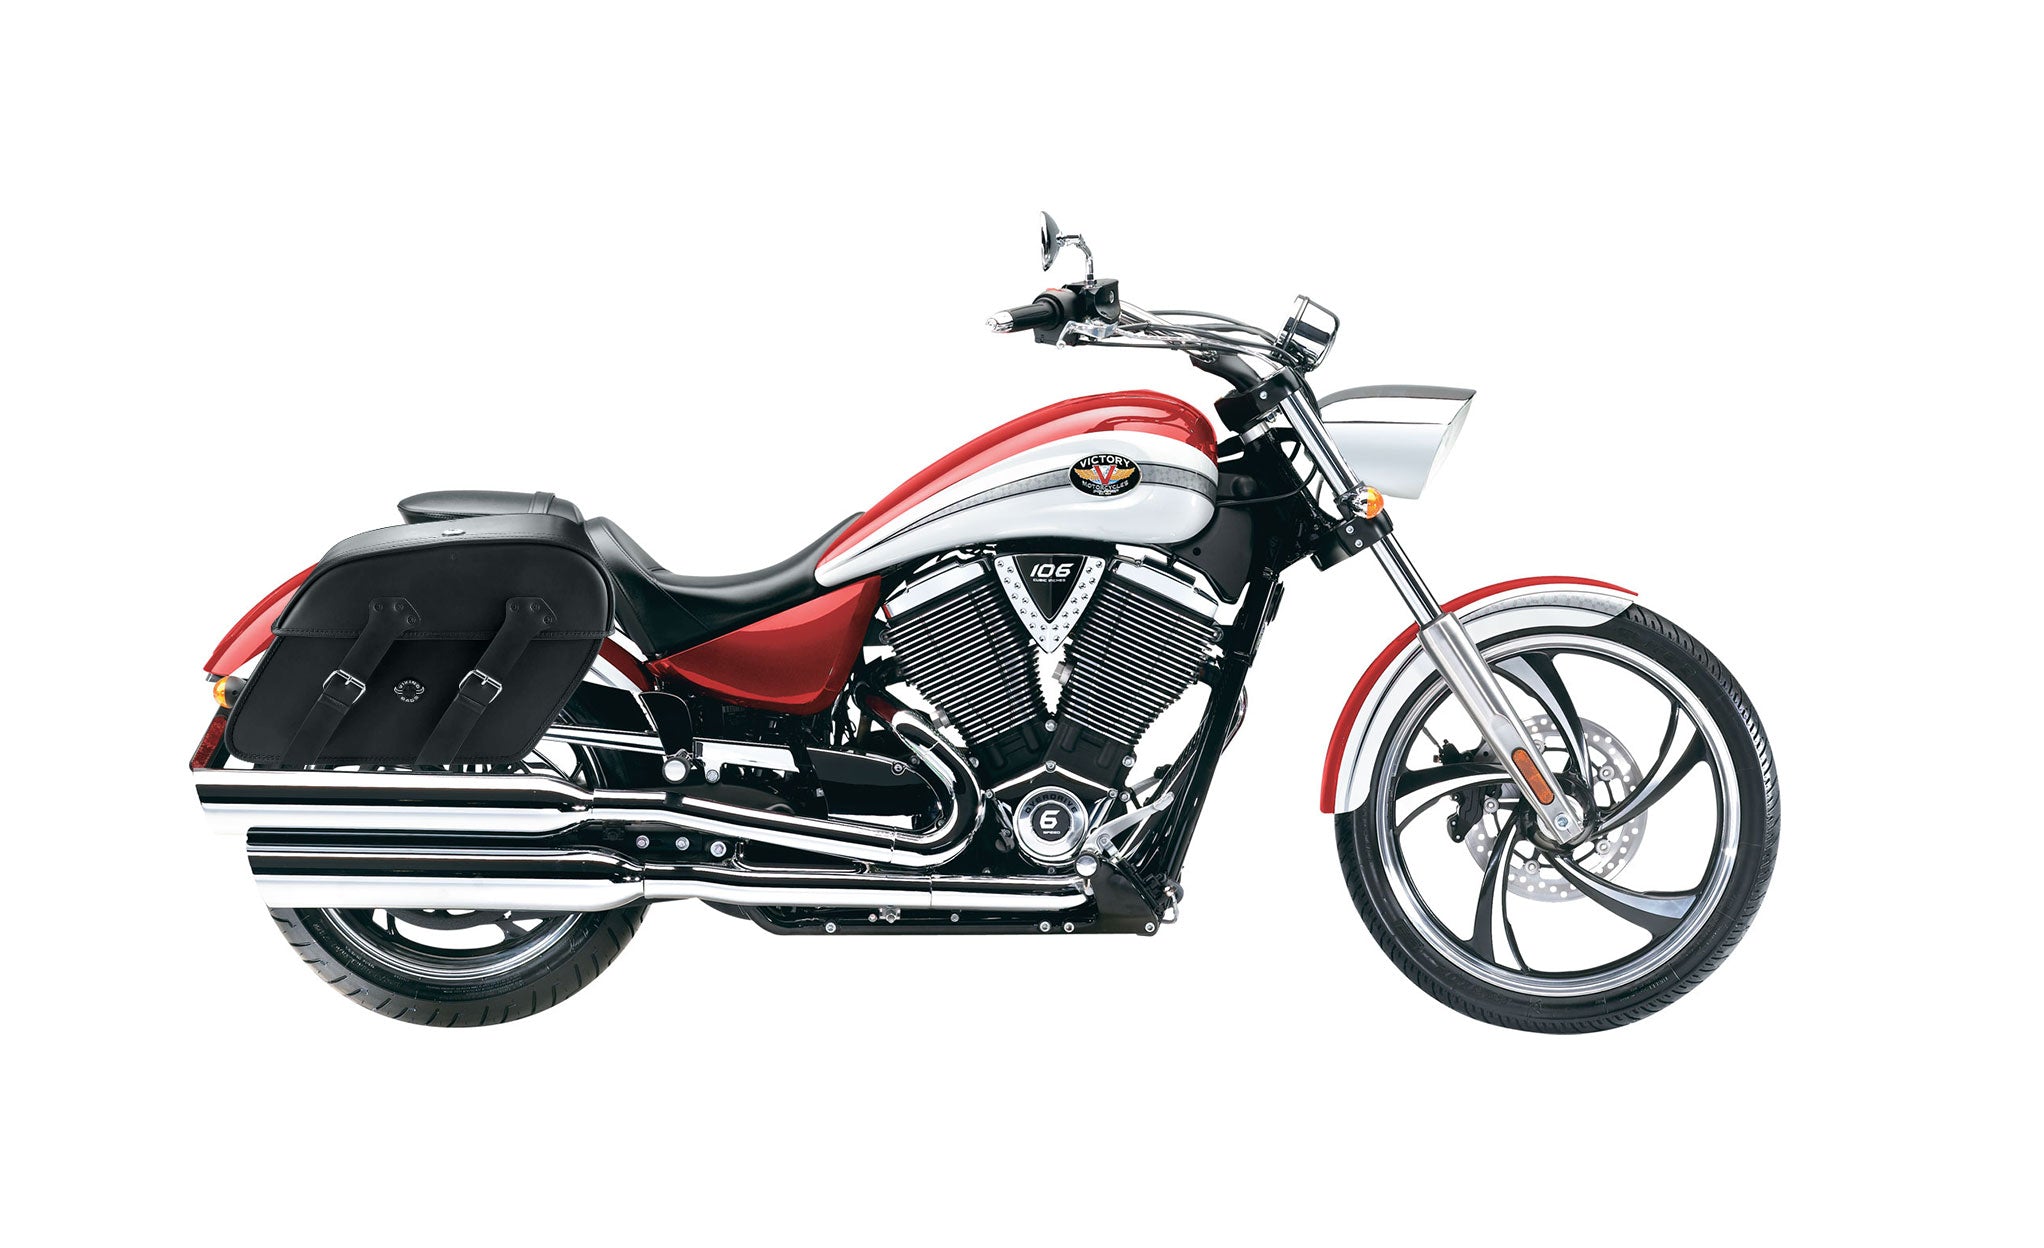 Viking Raven Extra Large Victory Vegas Leather Motorcycle Saddlebags on Bike Photo @expand